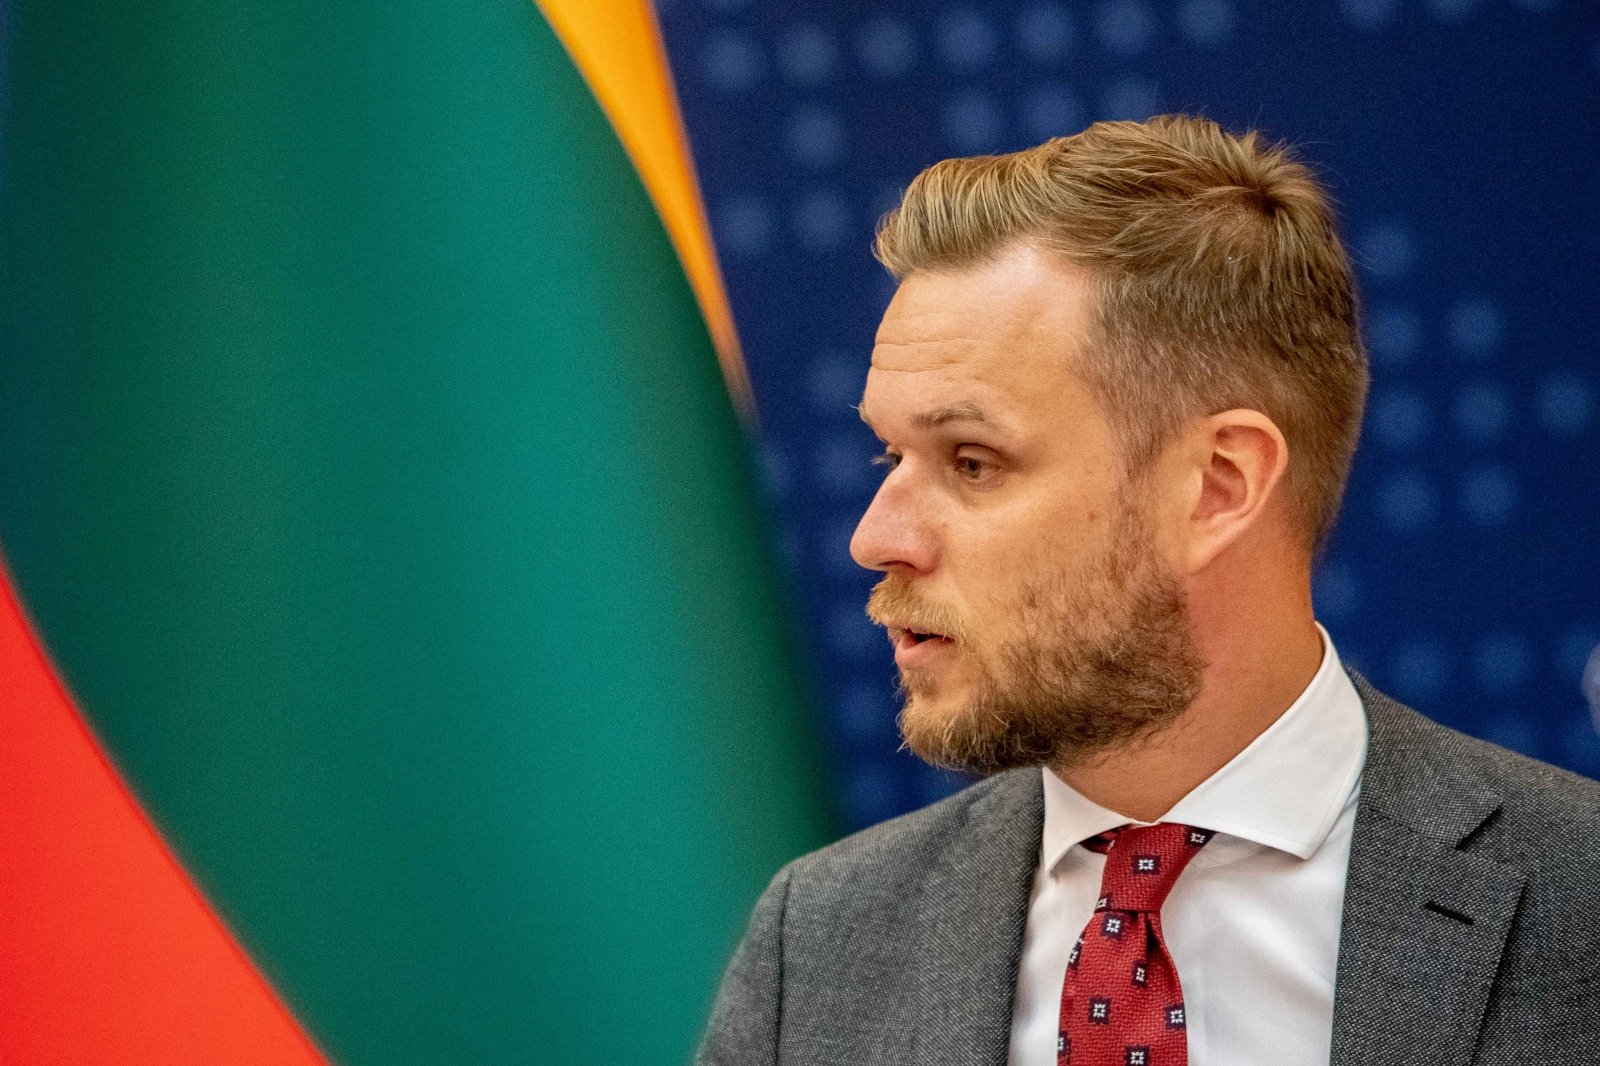 Landsbergis: Amerikos verslas vertina Lietuvos politinę poziciją